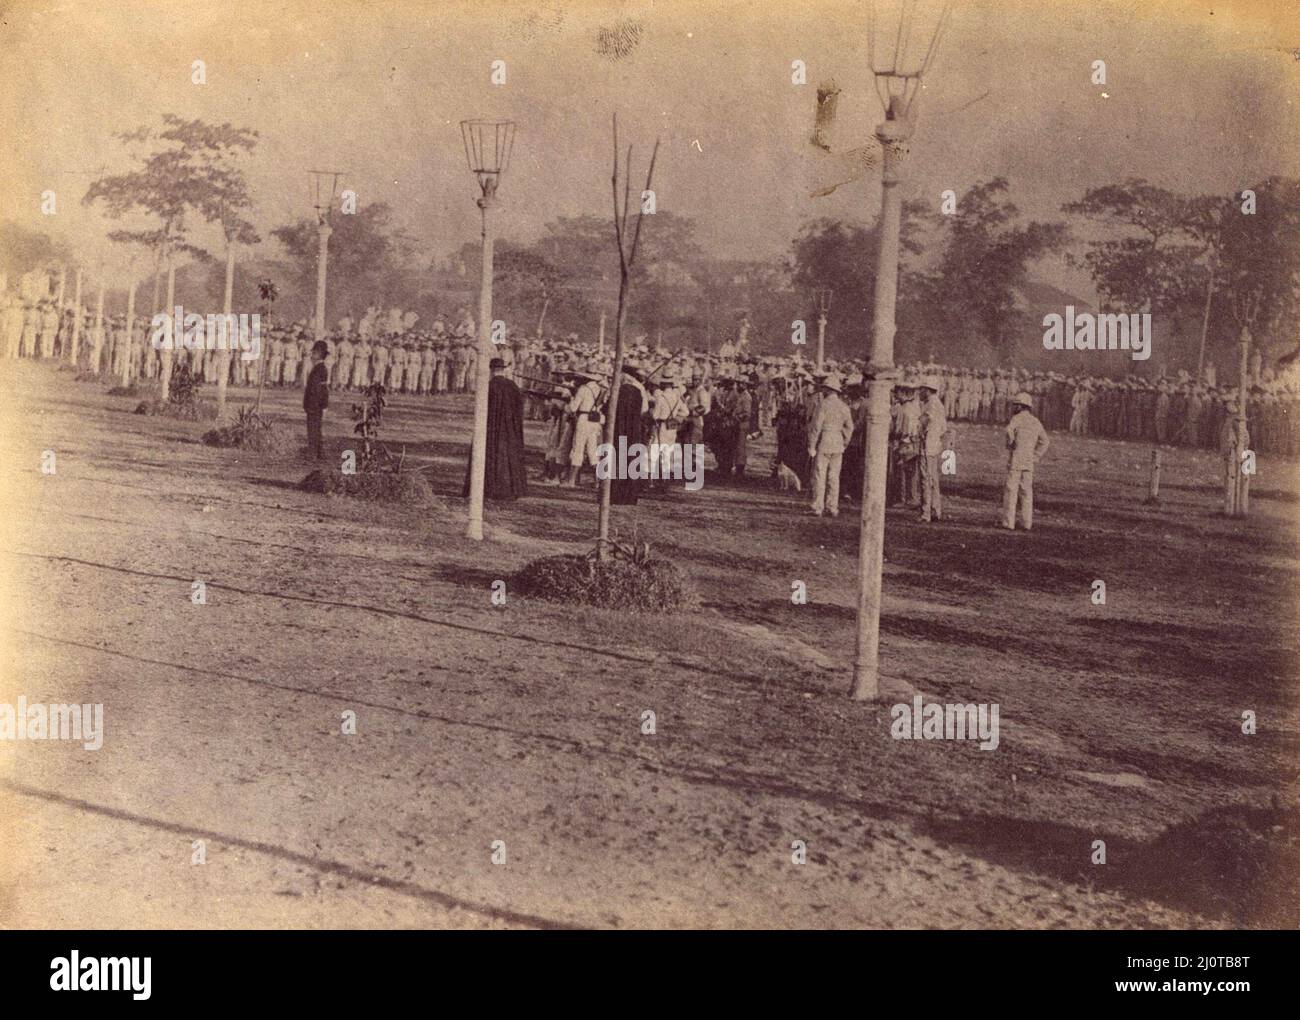 L'esecuzione di Jose Rizal. José Rizal, José Protasio Rizal Mercado y Alonso Realonda (1861 – 1896) nazionalista filippino, scrittore e polimato durante la fine del periodo coloniale spagnolo delle Filippine. È considerato l'eroe nazionale (pambansang bayani) delle Filippine. Foto Stock